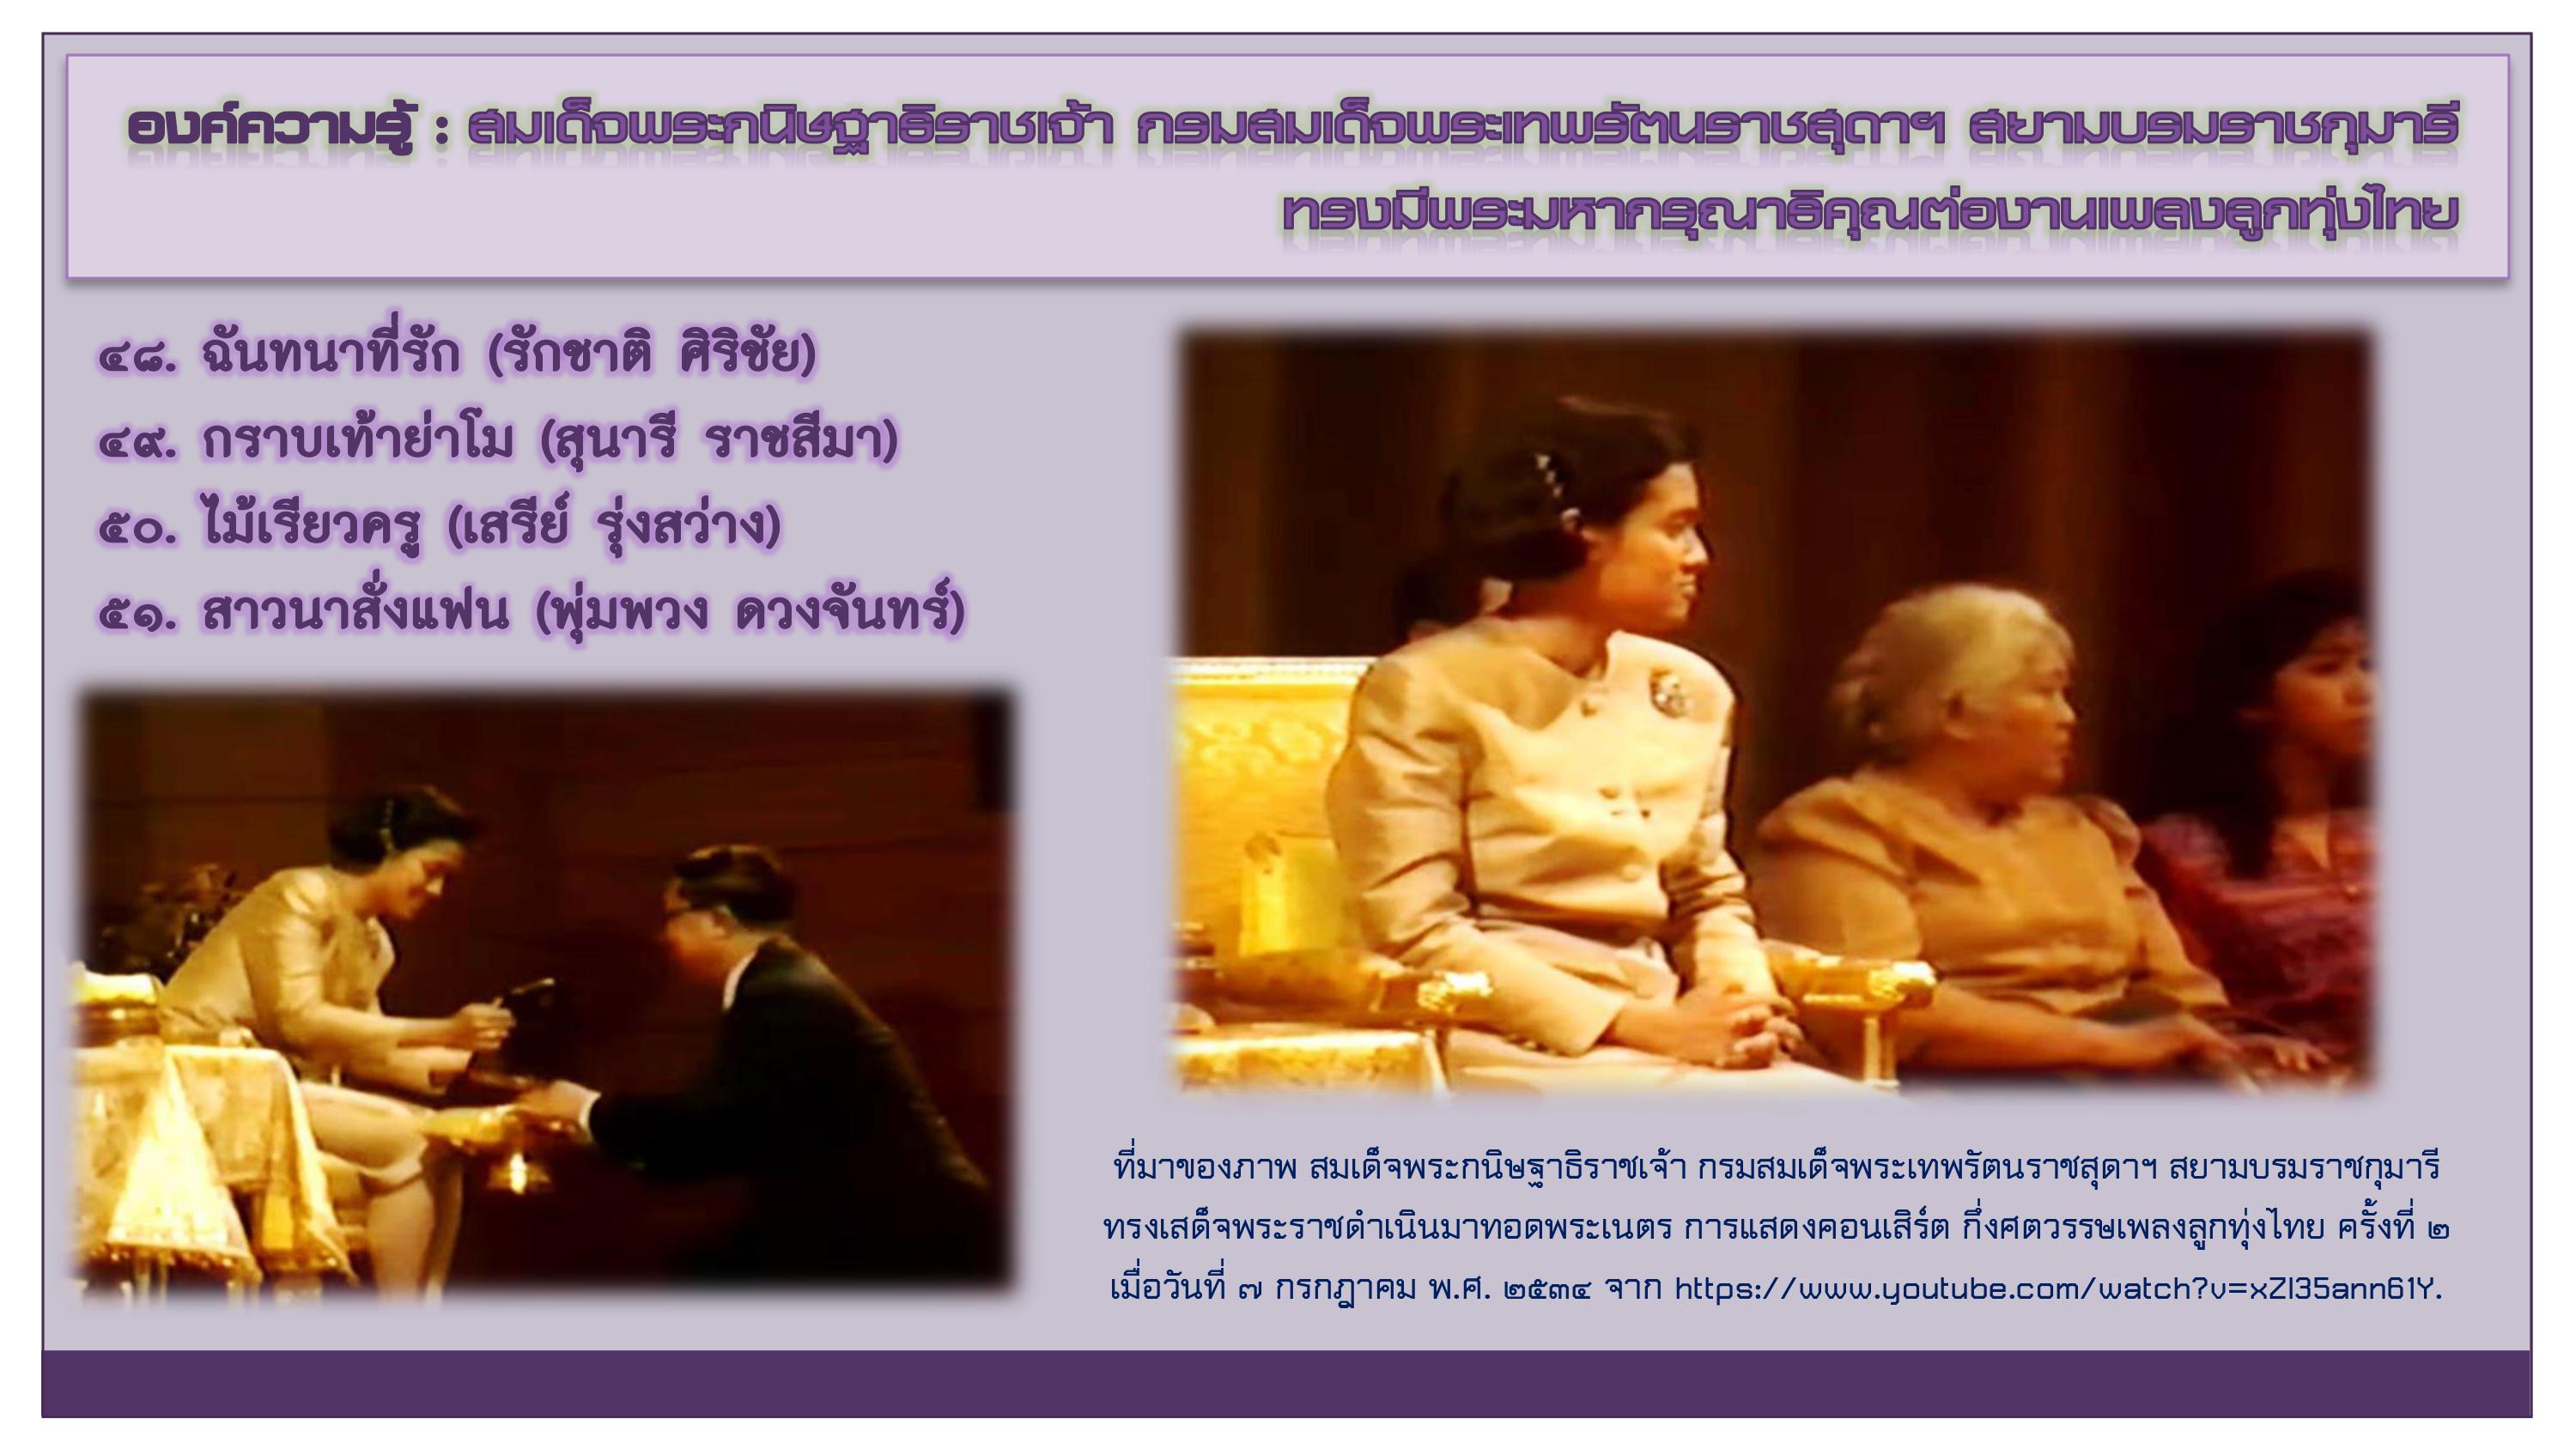 องค์ความรู้ : สมเด็จพระกนิษฐาธิราชเจ้า กรมสมเด็จพระเทพรัตนราชสุดาฯ สยามบรมราชกุมารี ทรงมีพระมหากรุณาธิคุณต่องานเพลงลูกทุ่งไทย